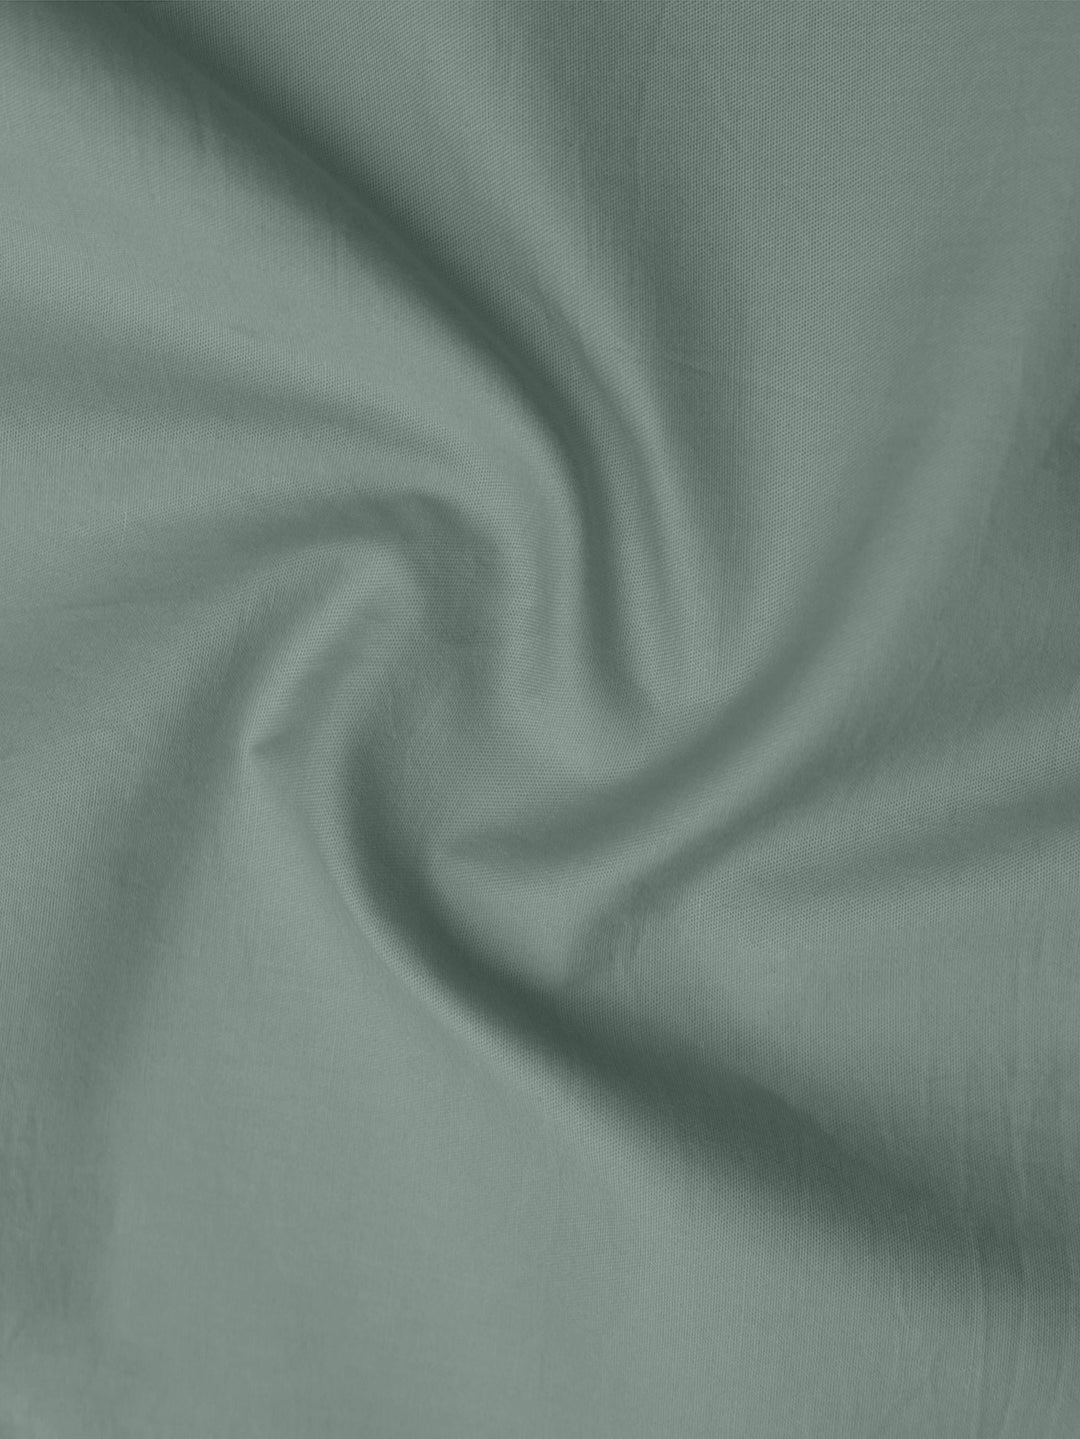 Mint Green Cotton Shirt fabric